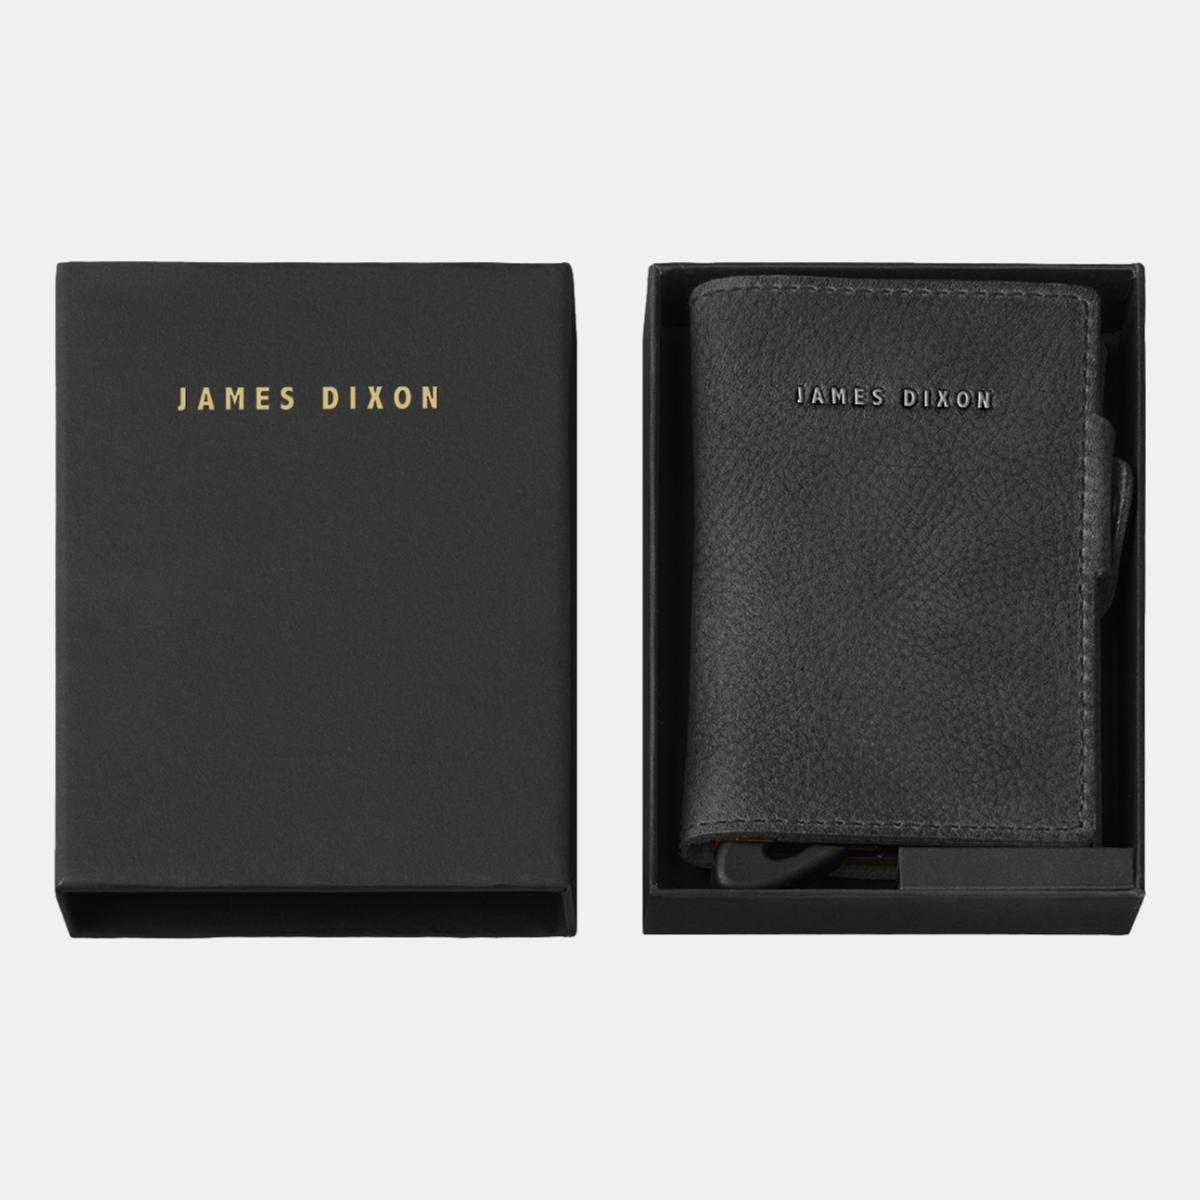 jd0288 james dixon boton grace black silver coin pocket wallet box